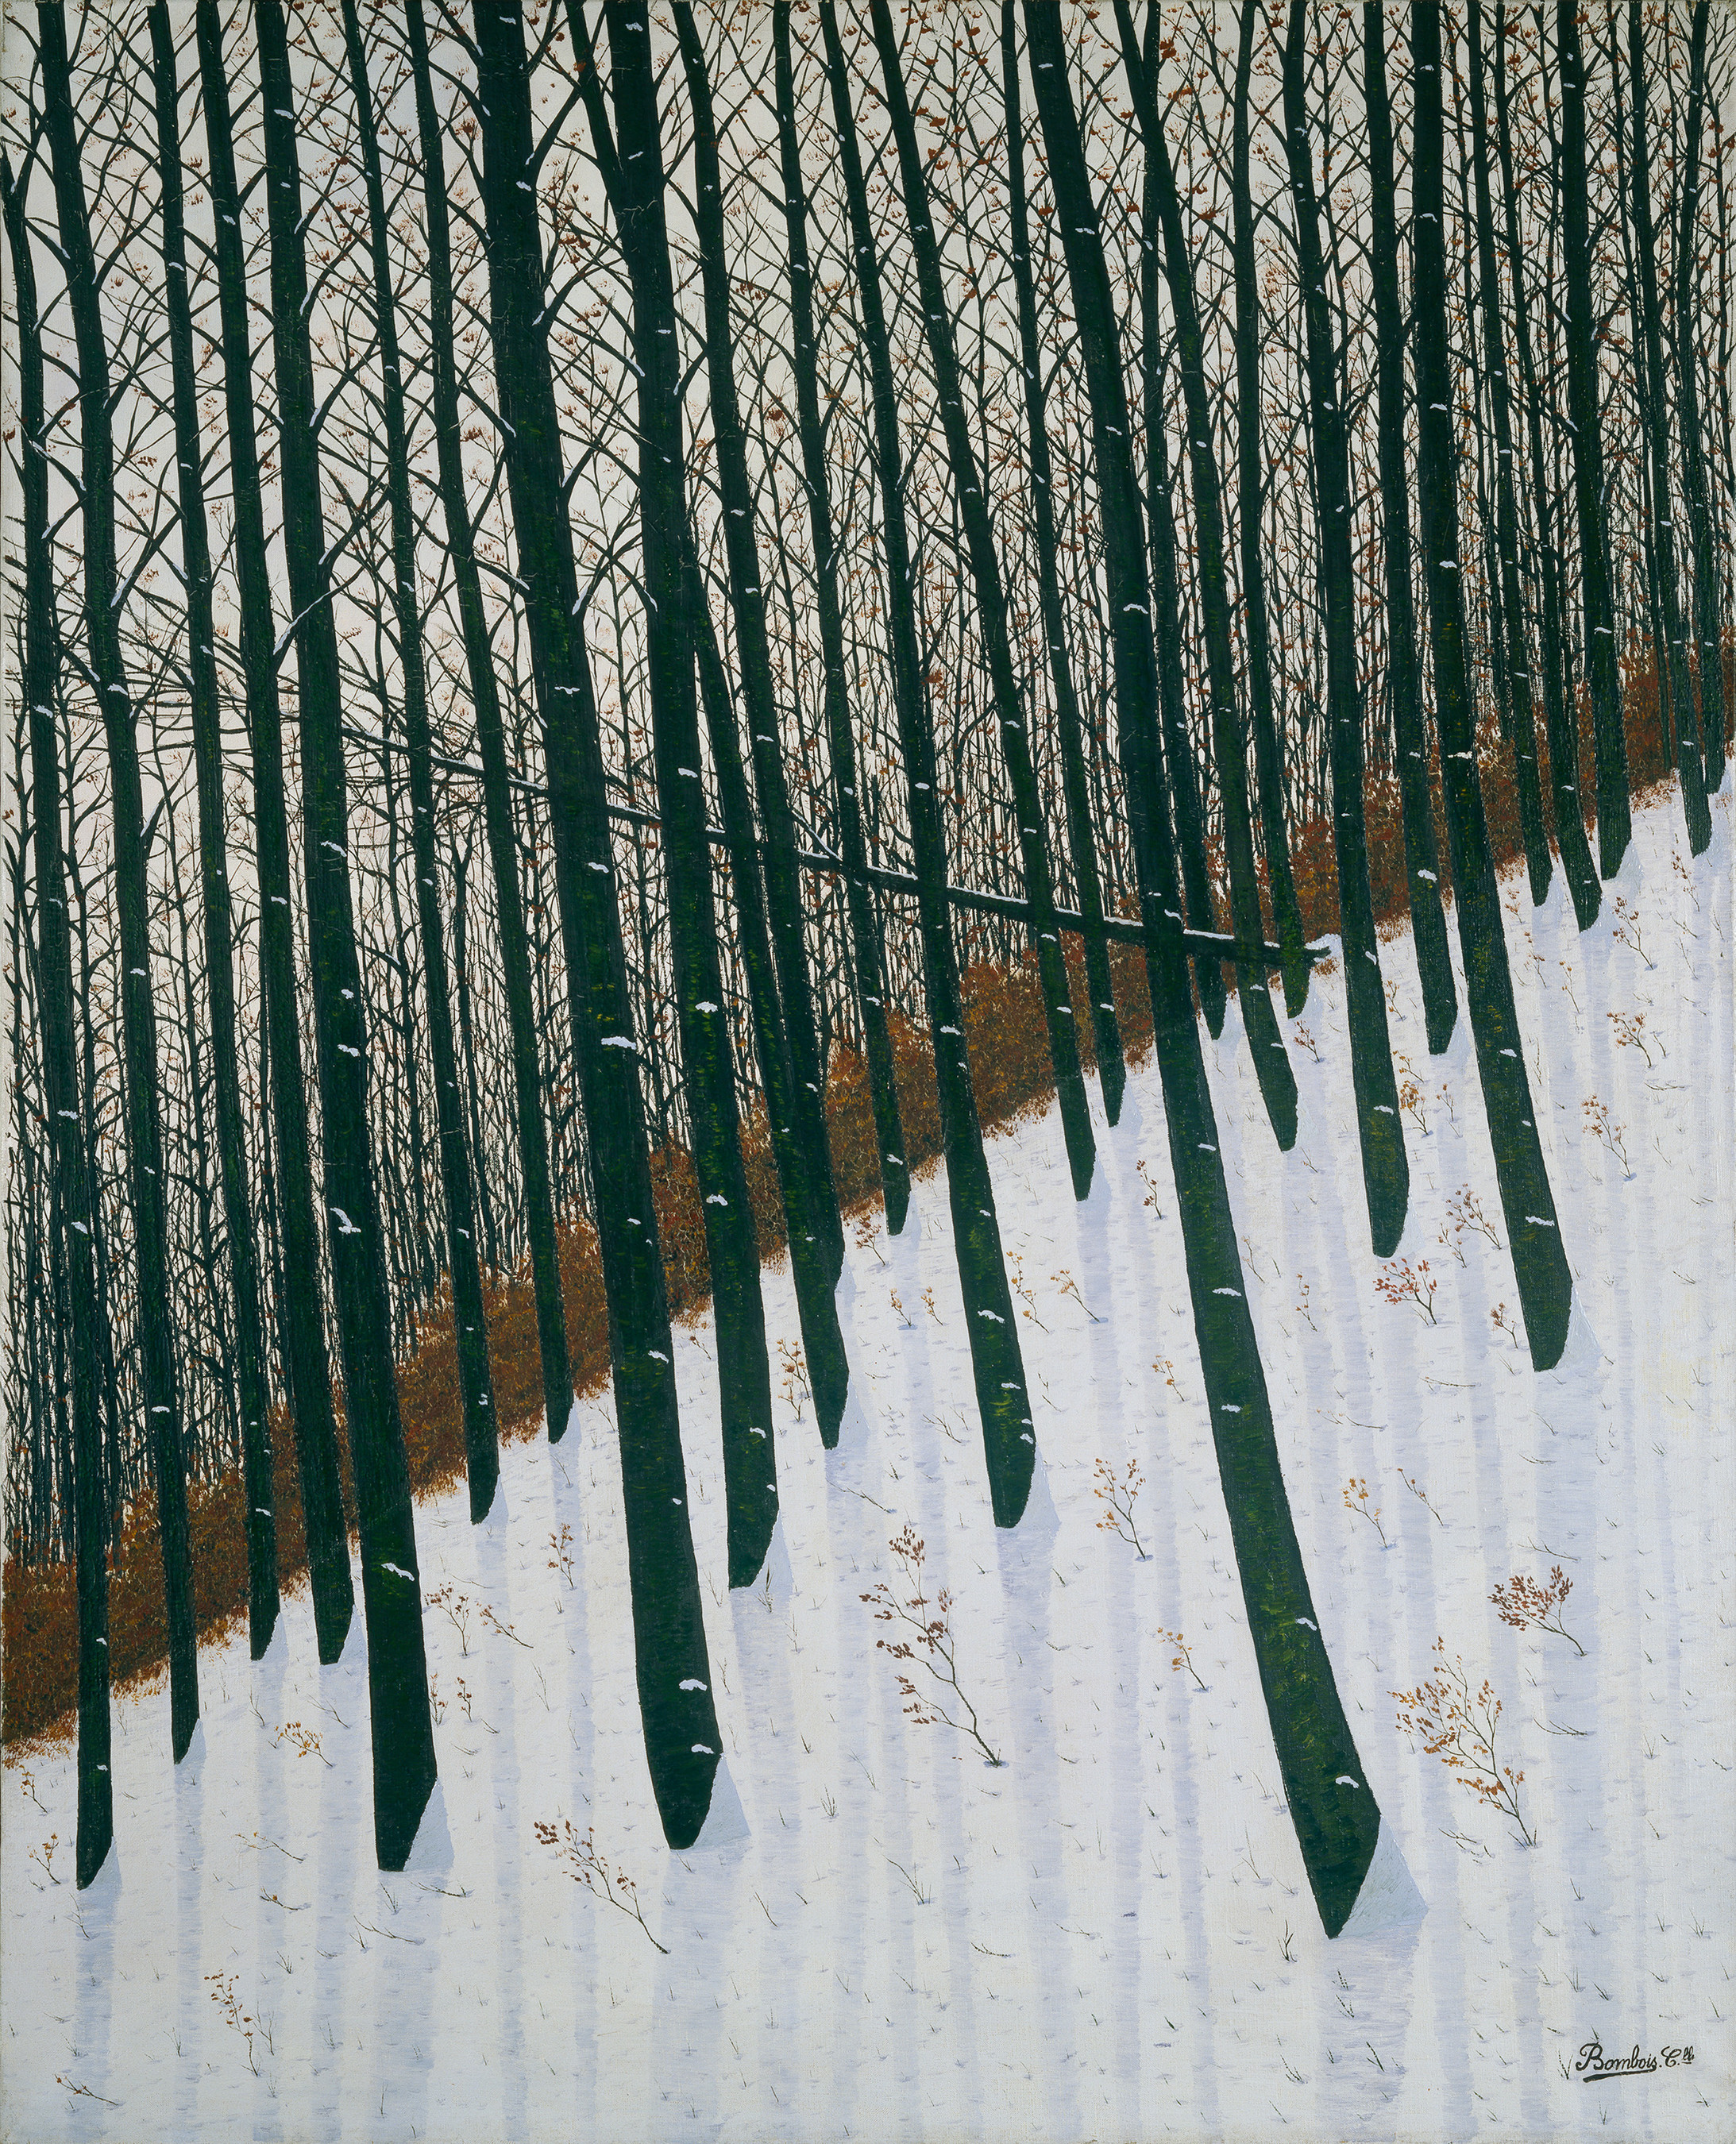 Camille Bombois, La forêt: l‘hiver, um 1925/1930
Öl auf Leinwand, 102 x 81,5 cm
Kunsthaus Zürich, Stiftung Rolf und Margit Weinberg, 2003
© 2018 ProLitteris, Zürich
